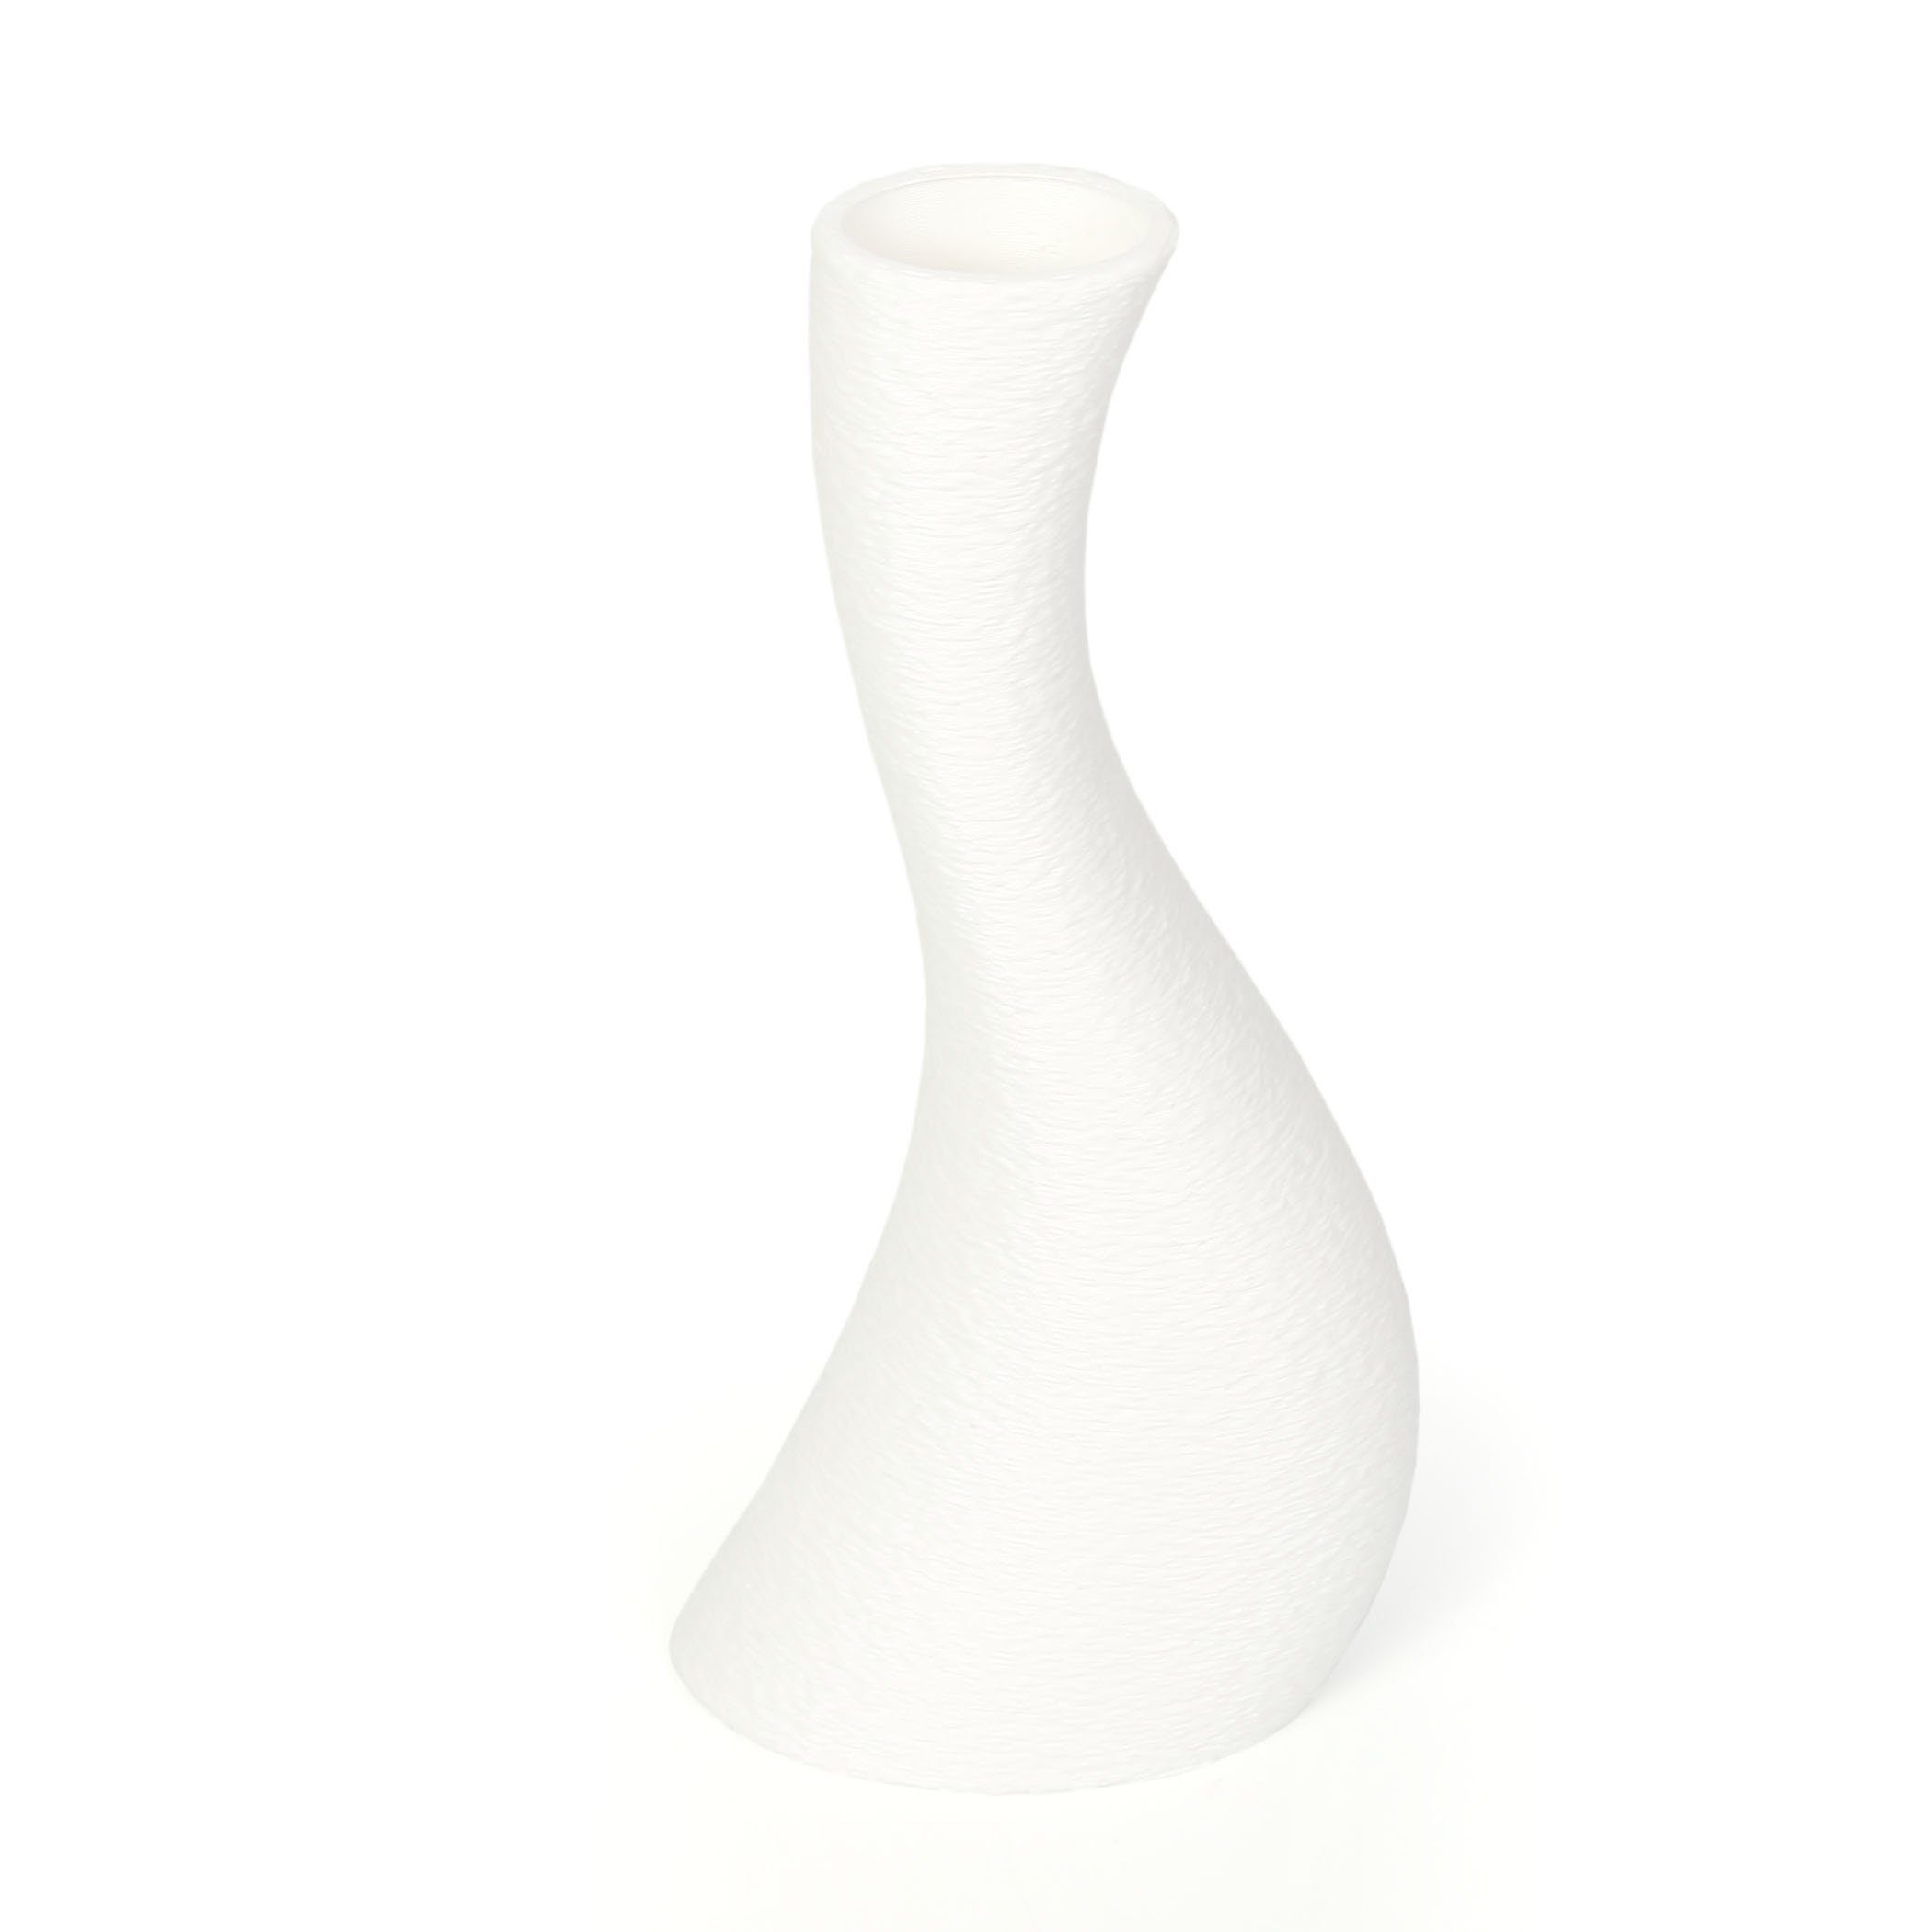 Vase aus White Bio-Kunststoff, & bruchsicher nachwachsenden Dekorative wasserdicht Dekovase Blumenvase Rohstoffen; – Designer Kreative aus Feder